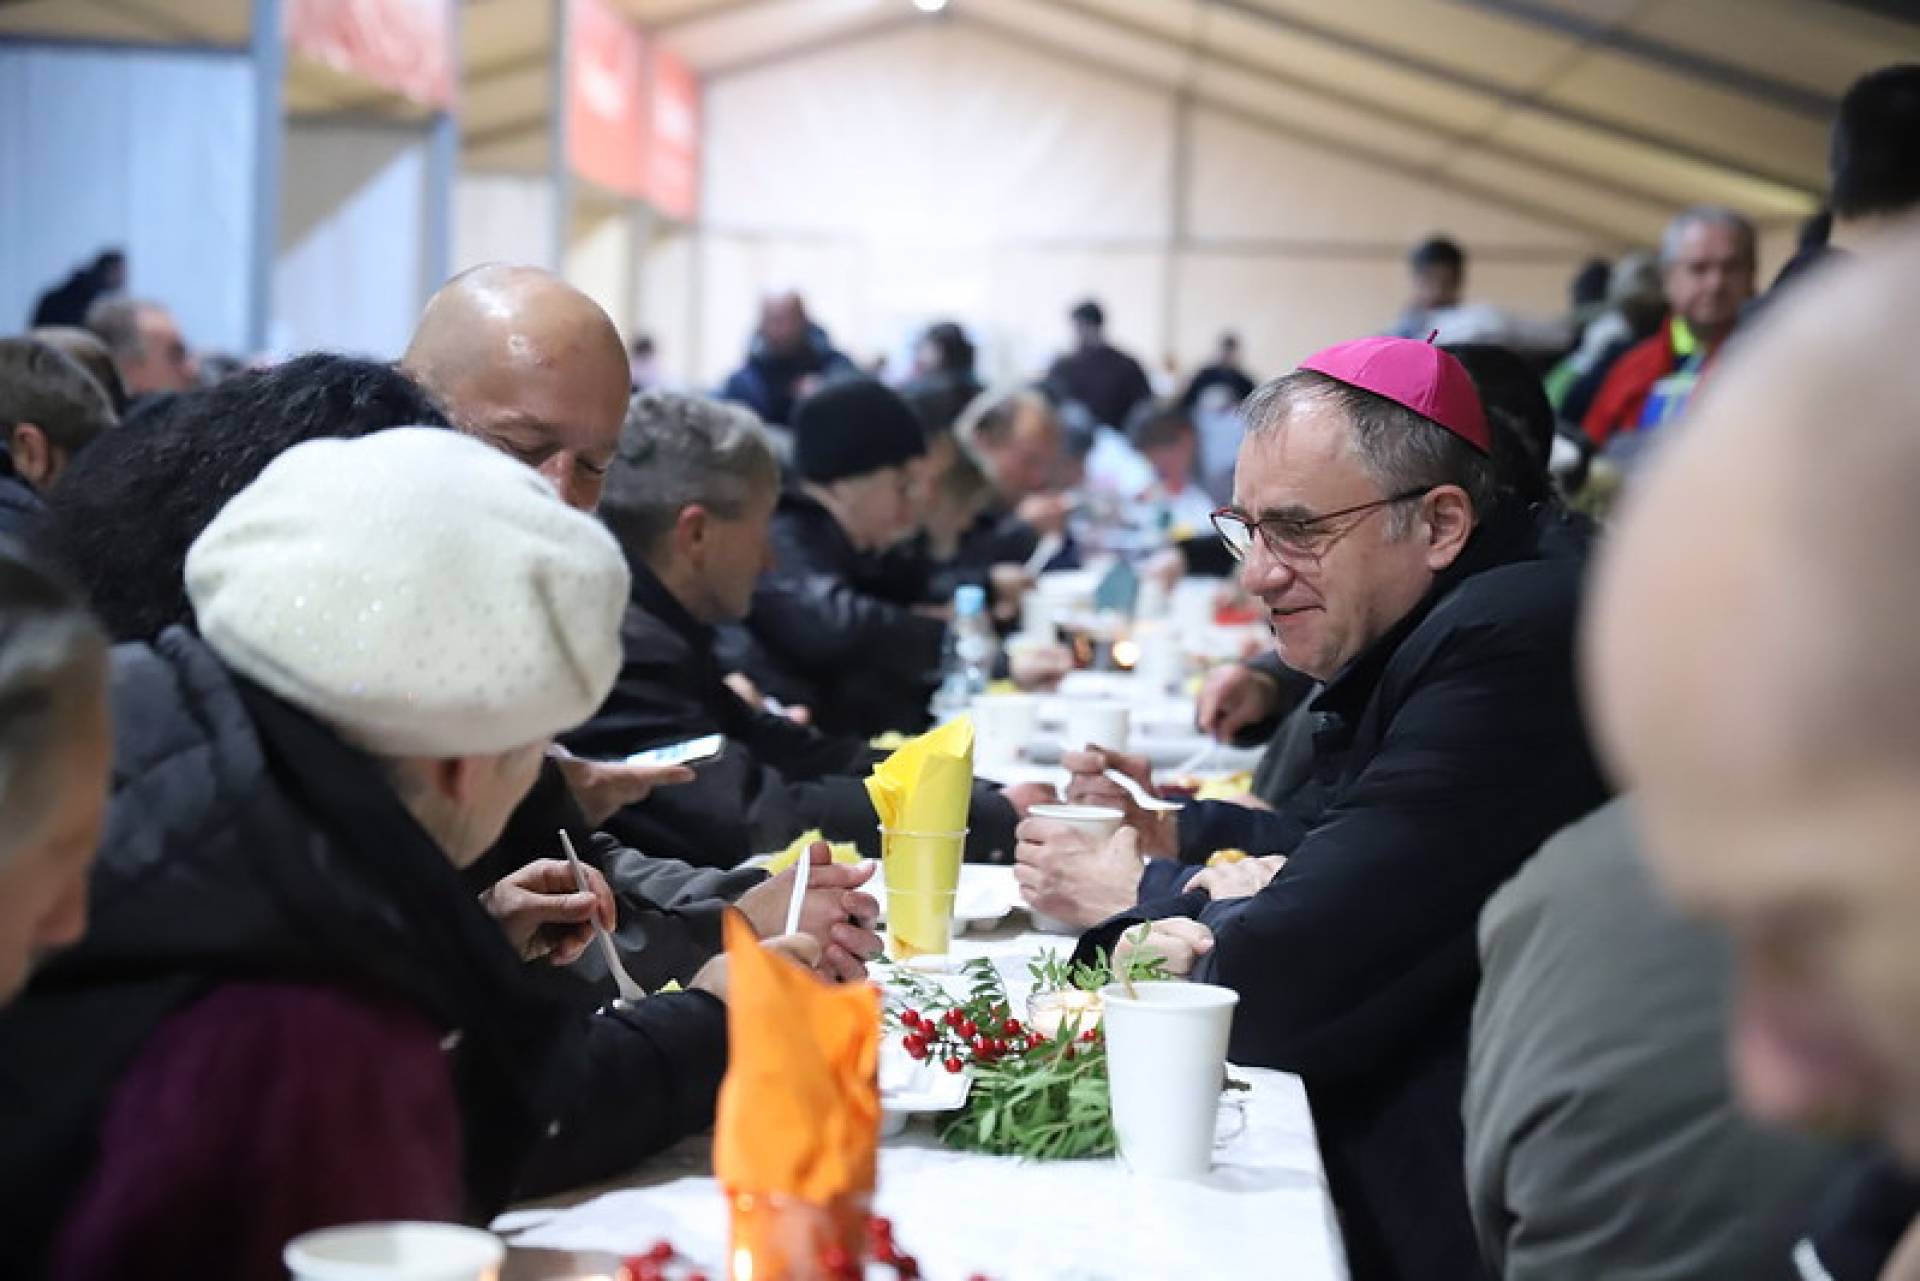 Krakowski biskup zjadł obiad z ubogimi. "Ubogim jest ten, kto nie potrafi się dzielić"